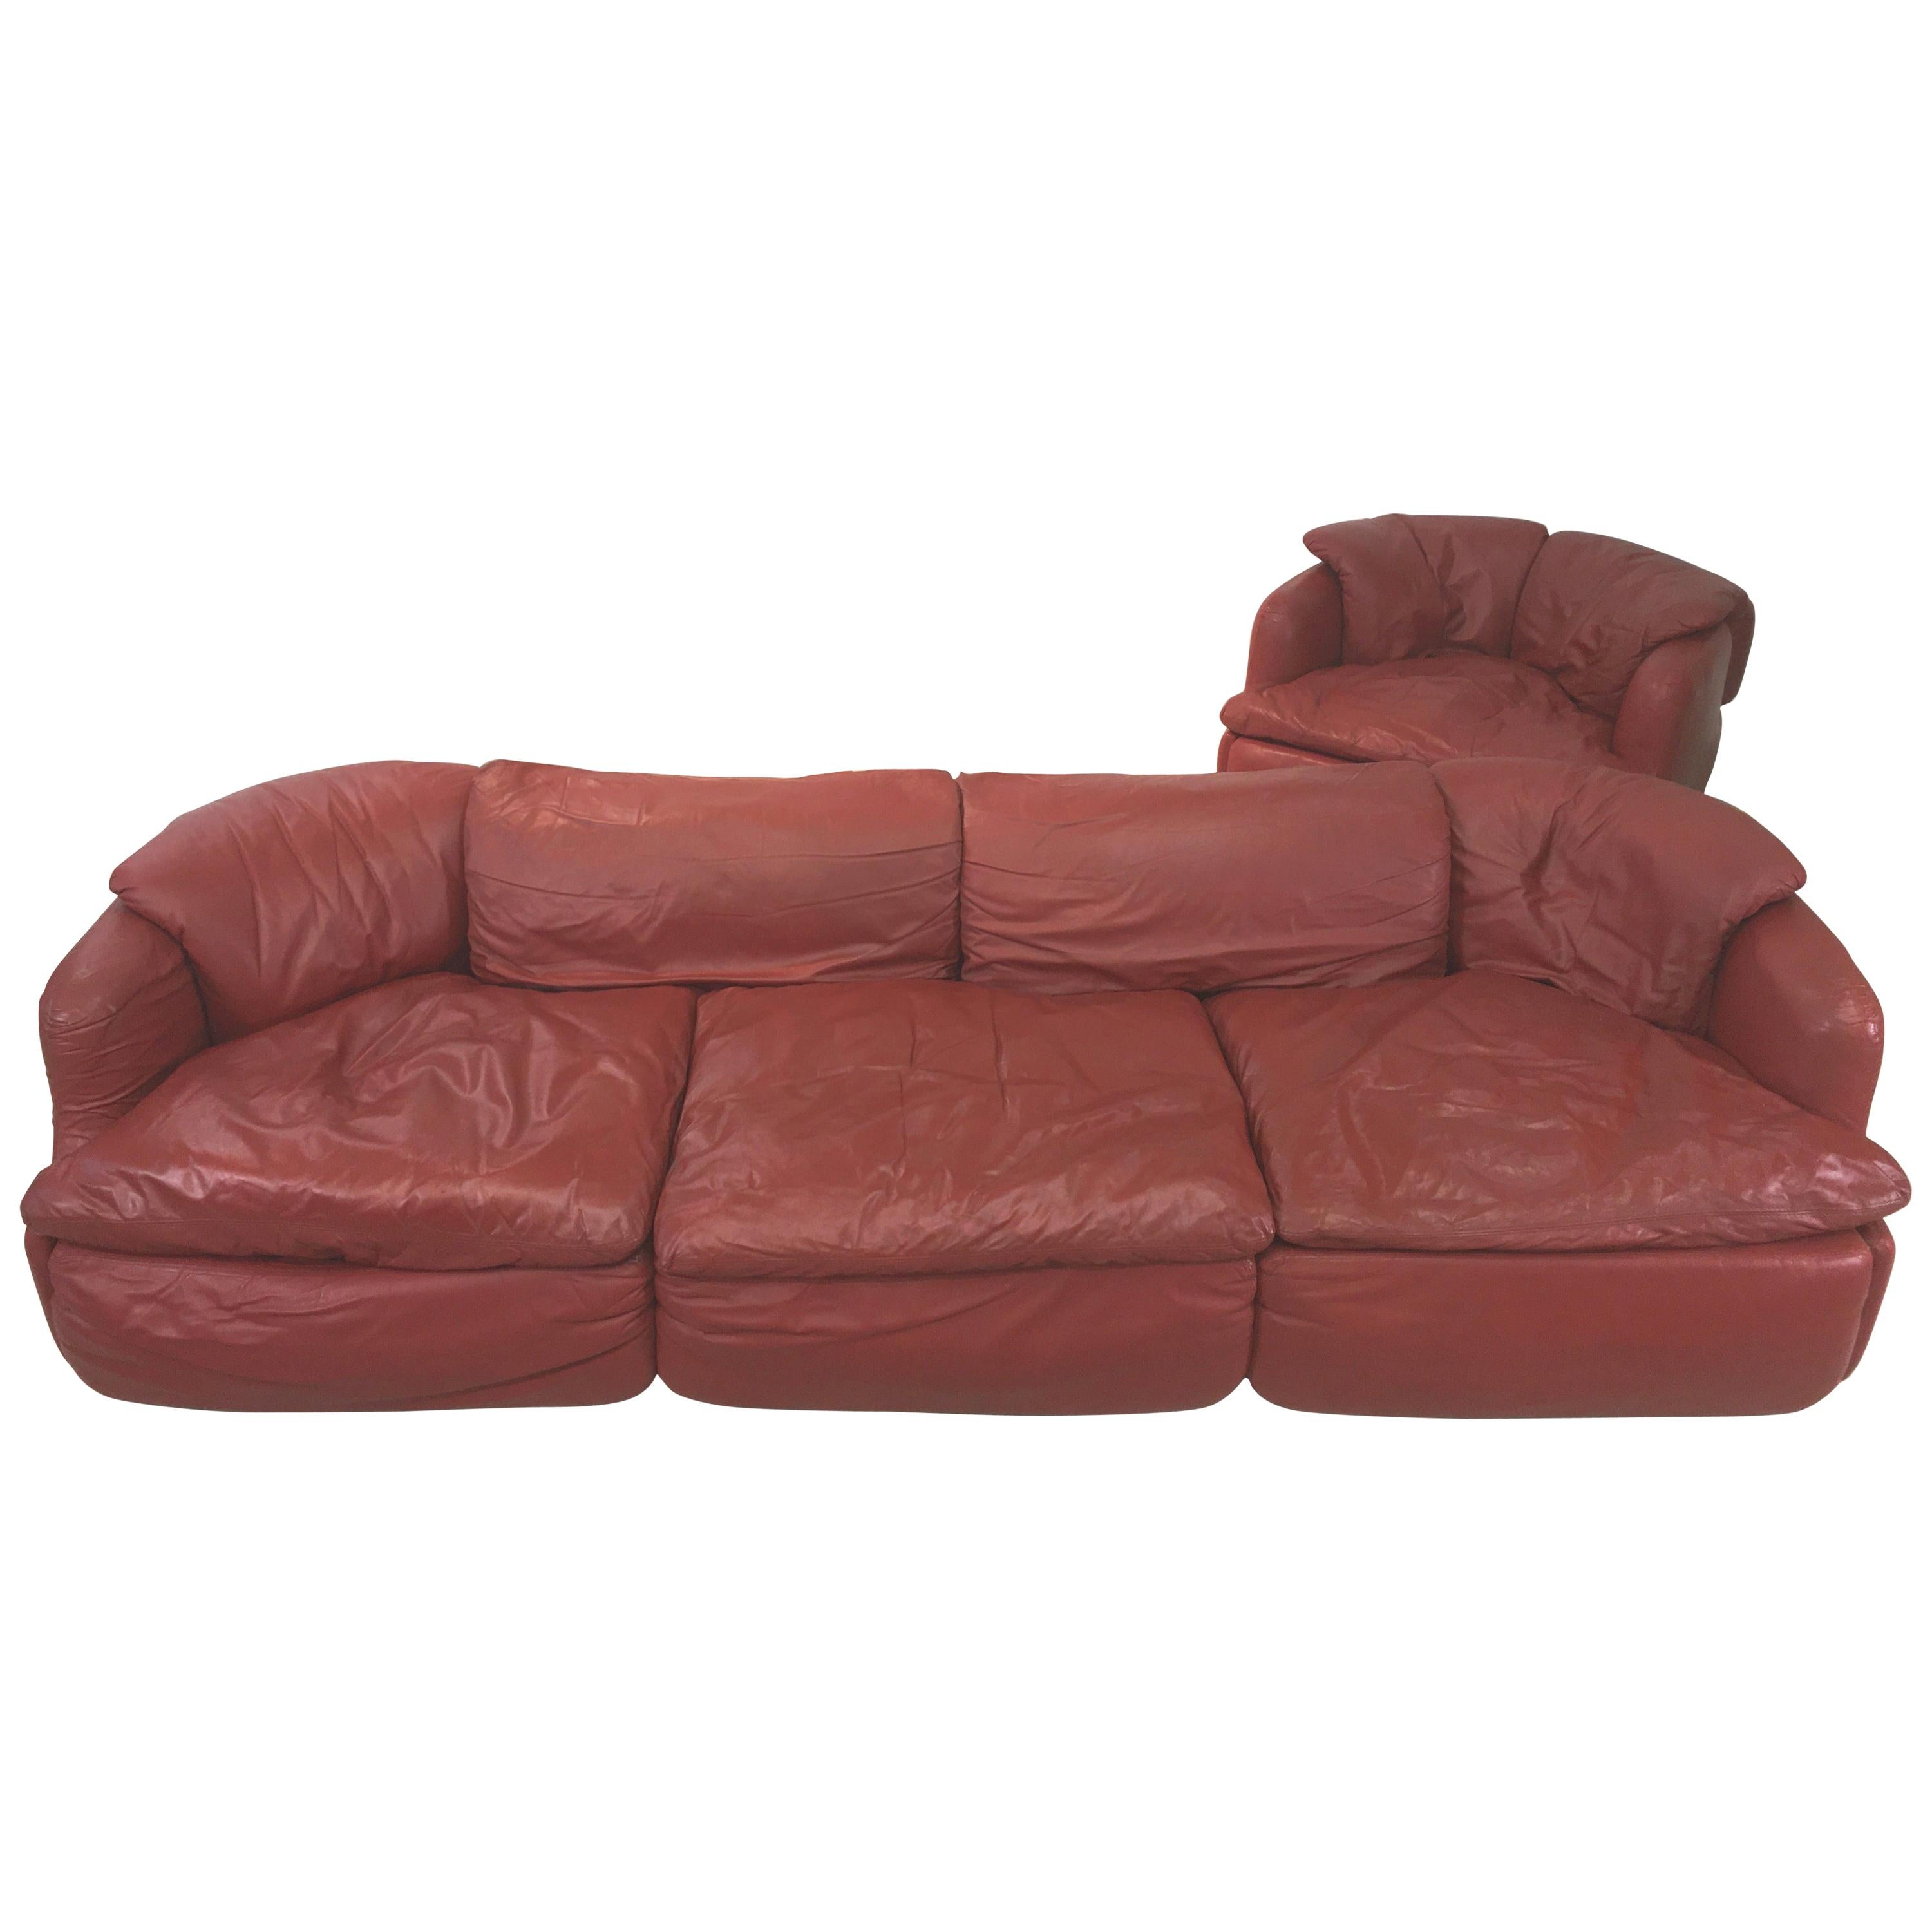 Nous avons un canapé en cuir rouge brique/cordovan et un fauteuil assorti, conçus par l'architecte italien Alberto Rosselli en 1972 pour Saporiti Italia. Deux pièces au total. Le prix indiqué est celui du canapé et de la chaise ensemble.
Le